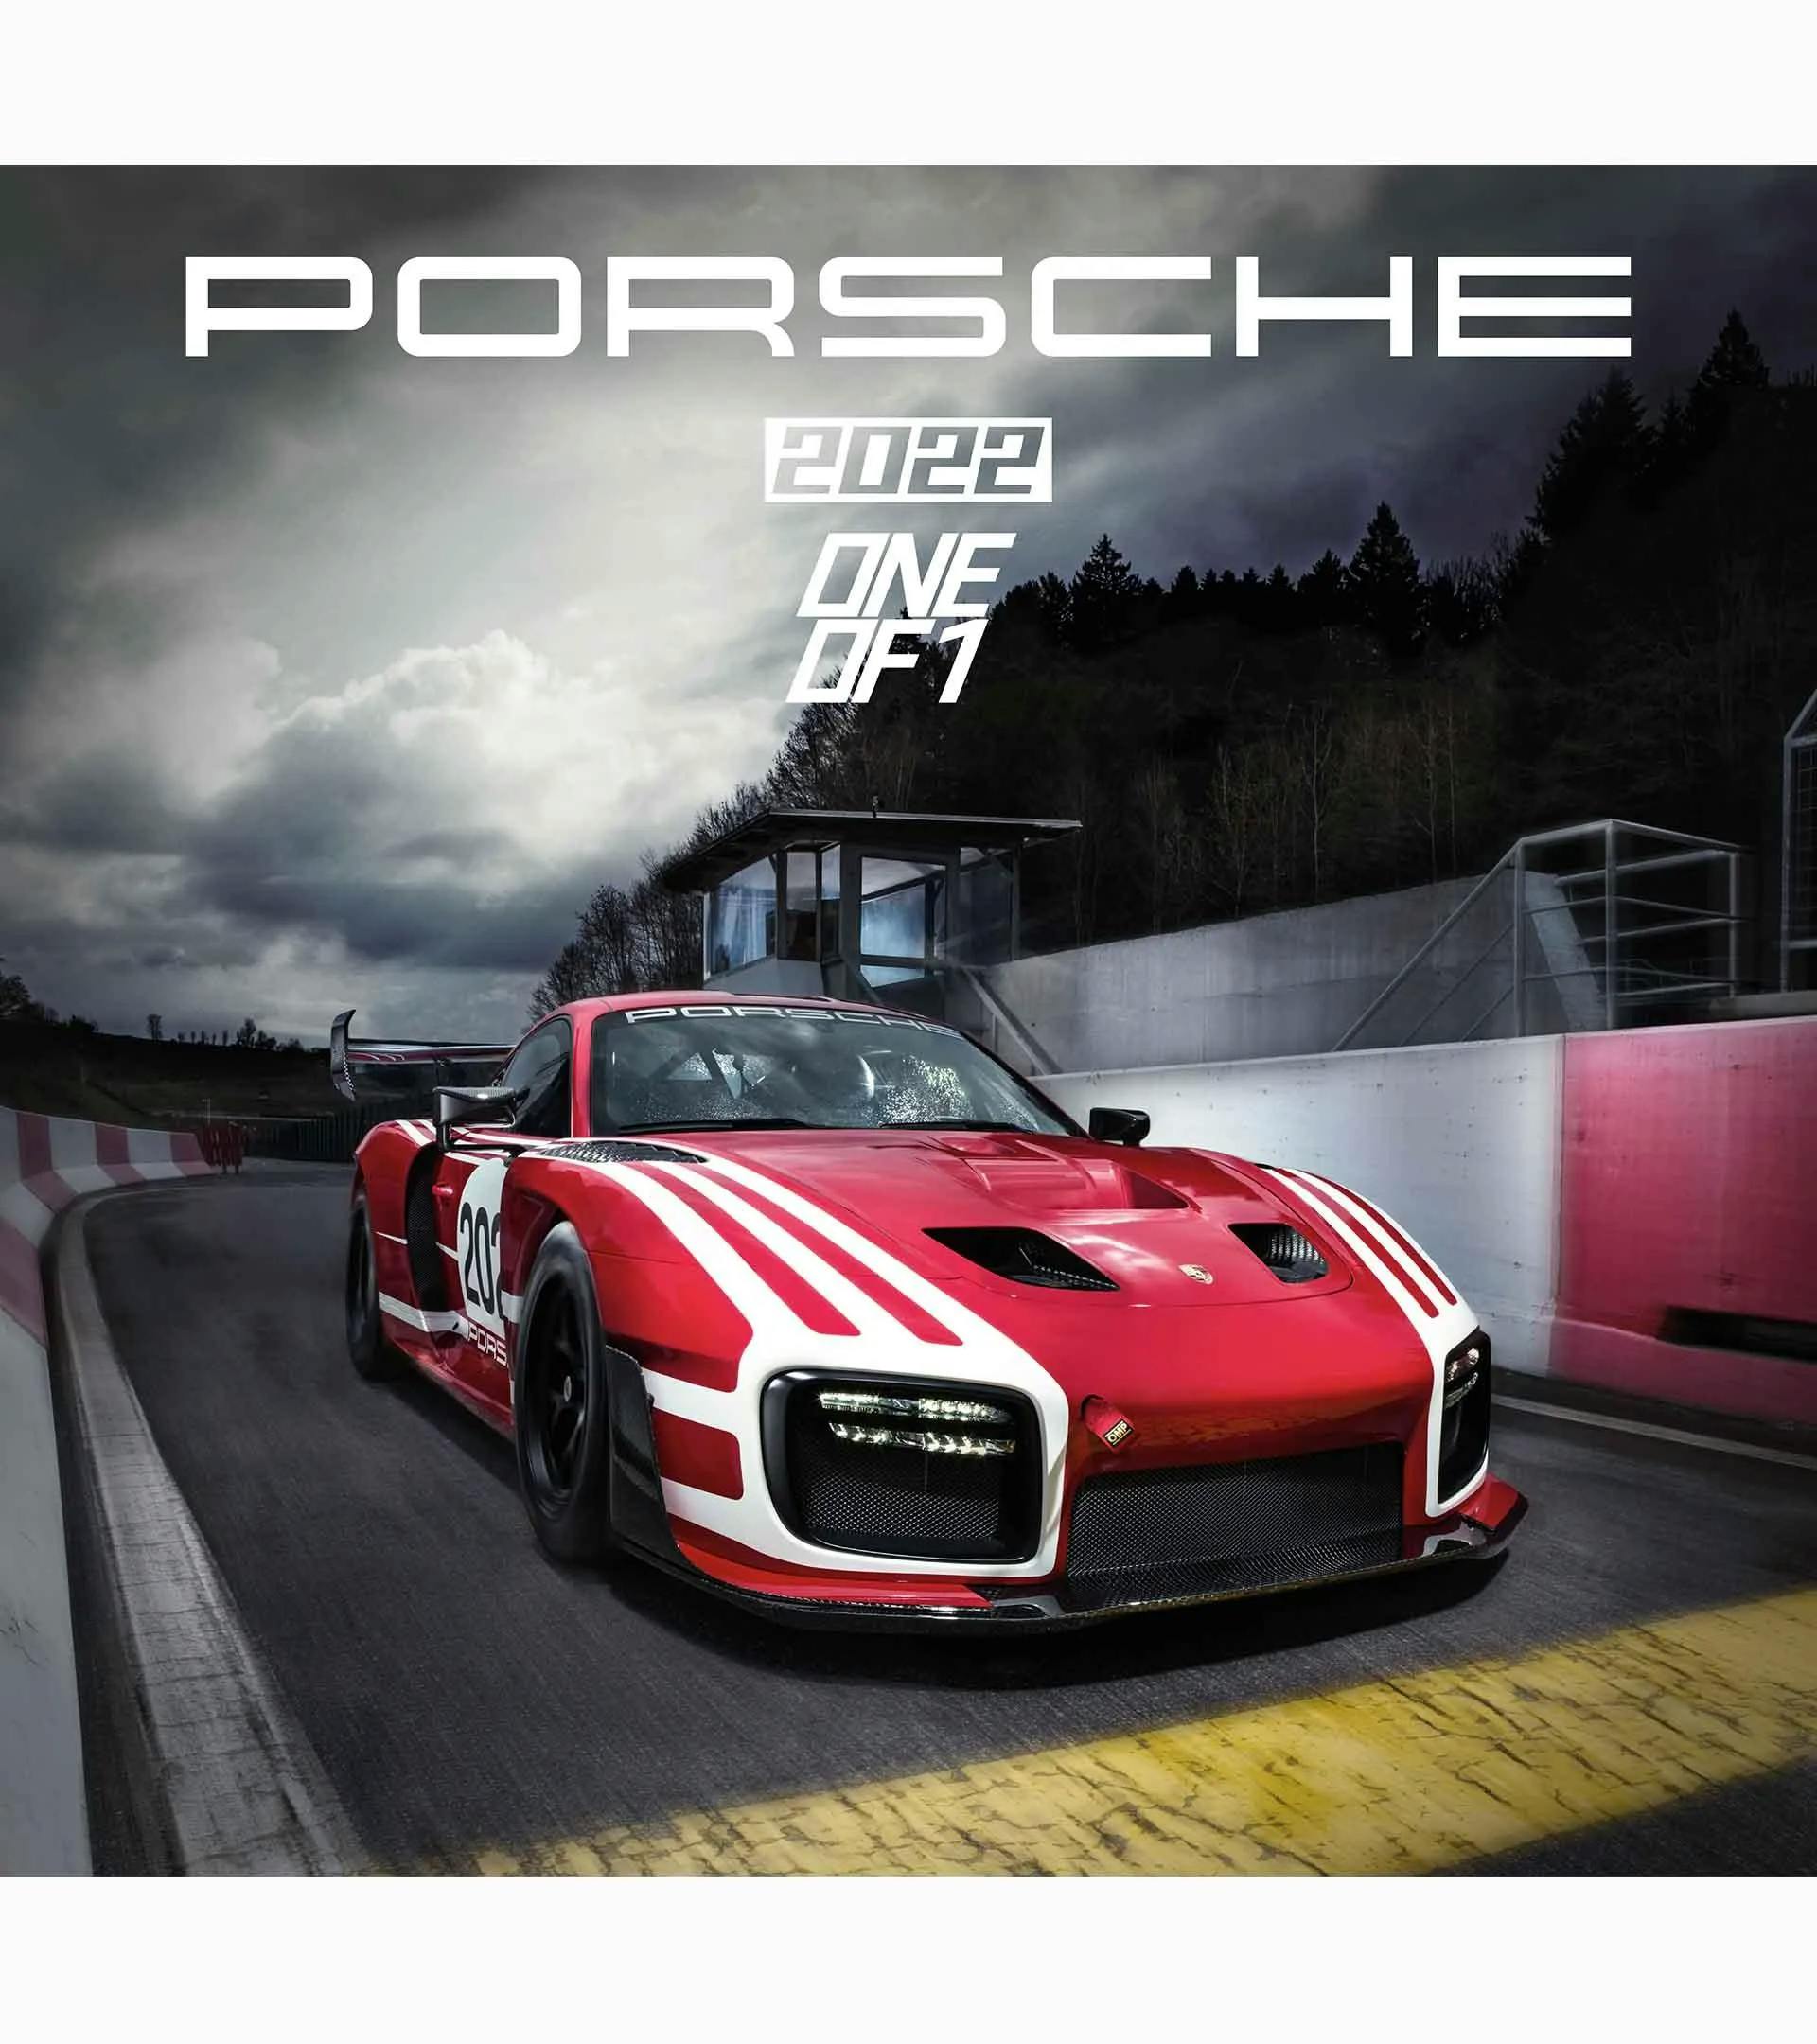 Calendario de Porsche 2022: "One of 1" 1